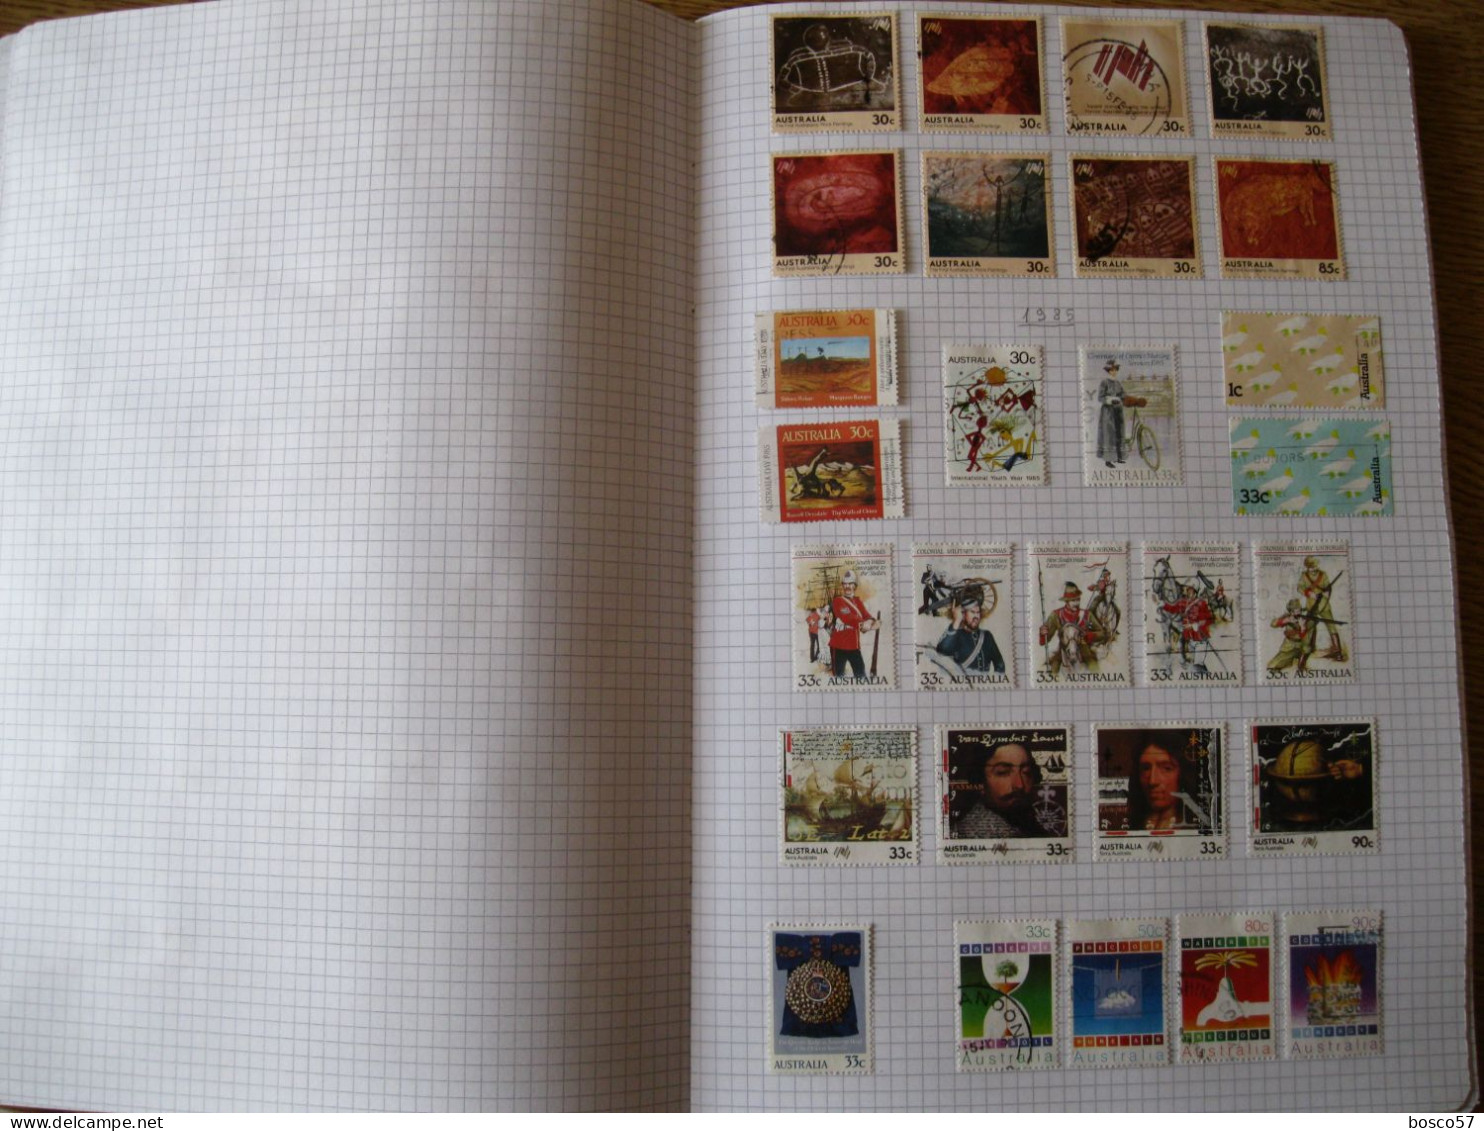 Collezione di francobolli di Australia in gran parte usata montata su album autocostruito.